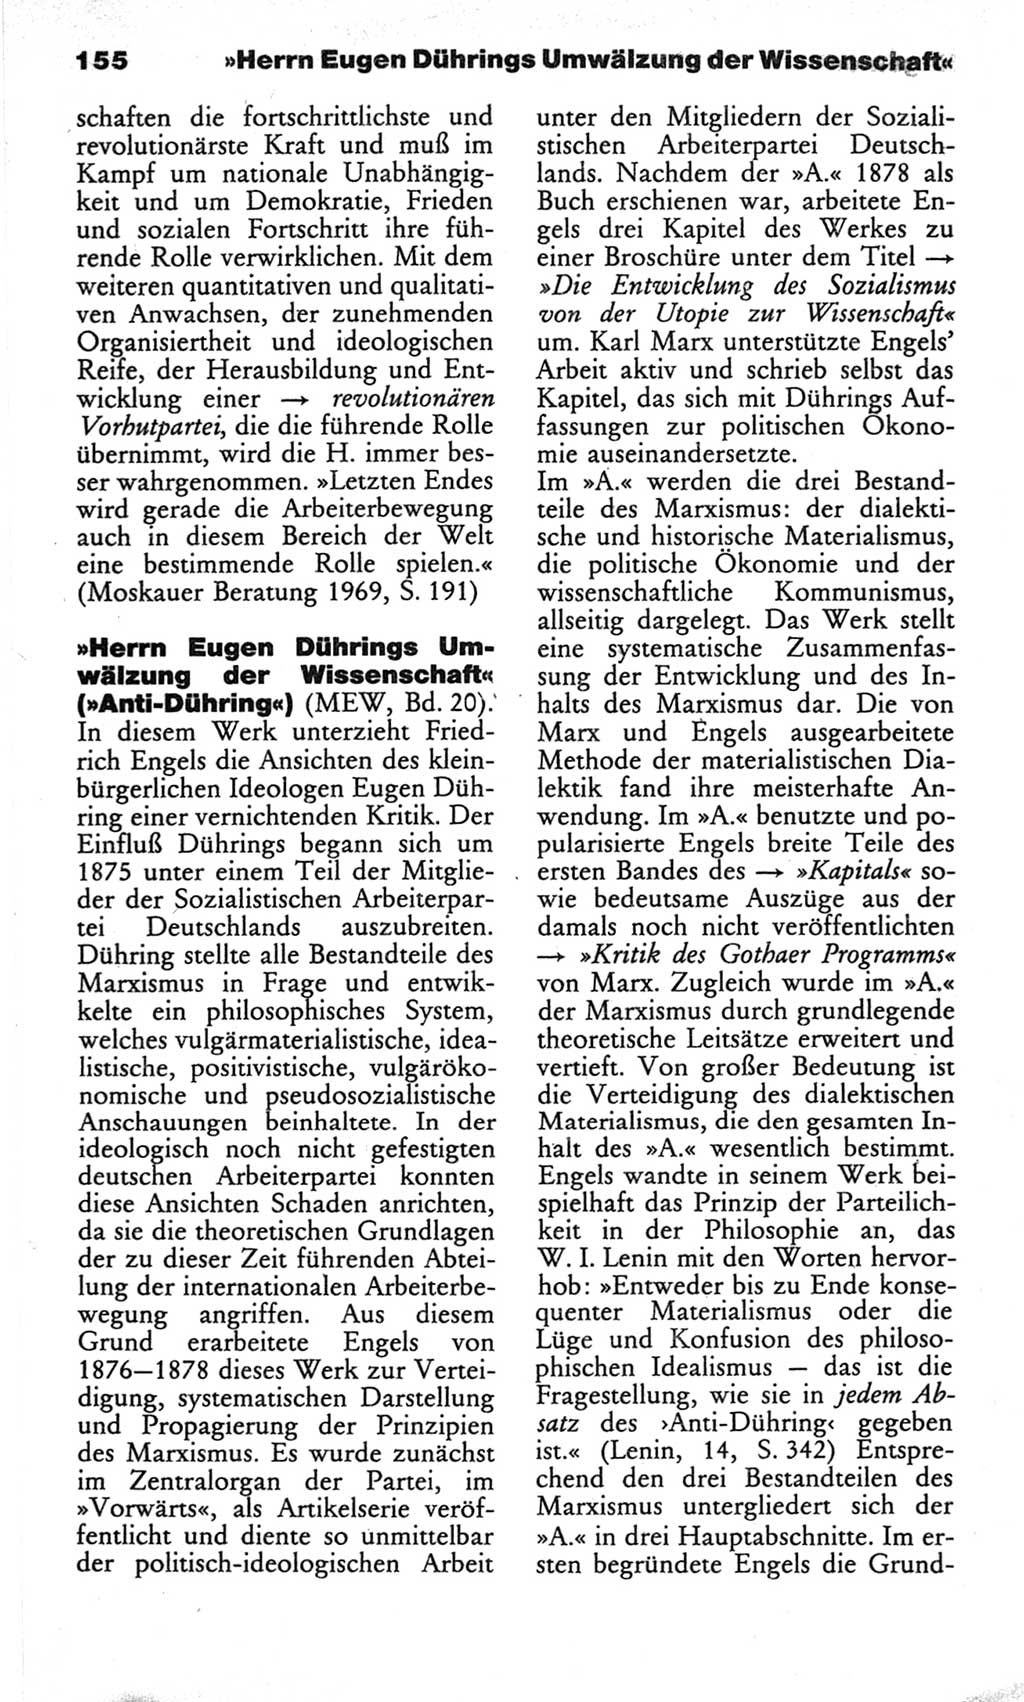 Wörterbuch des wissenschaftlichen Kommunismus [Deutsche Demokratische Republik (DDR)] 1982, Seite 155 (Wb. wiss. Komm. DDR 1982, S. 155)